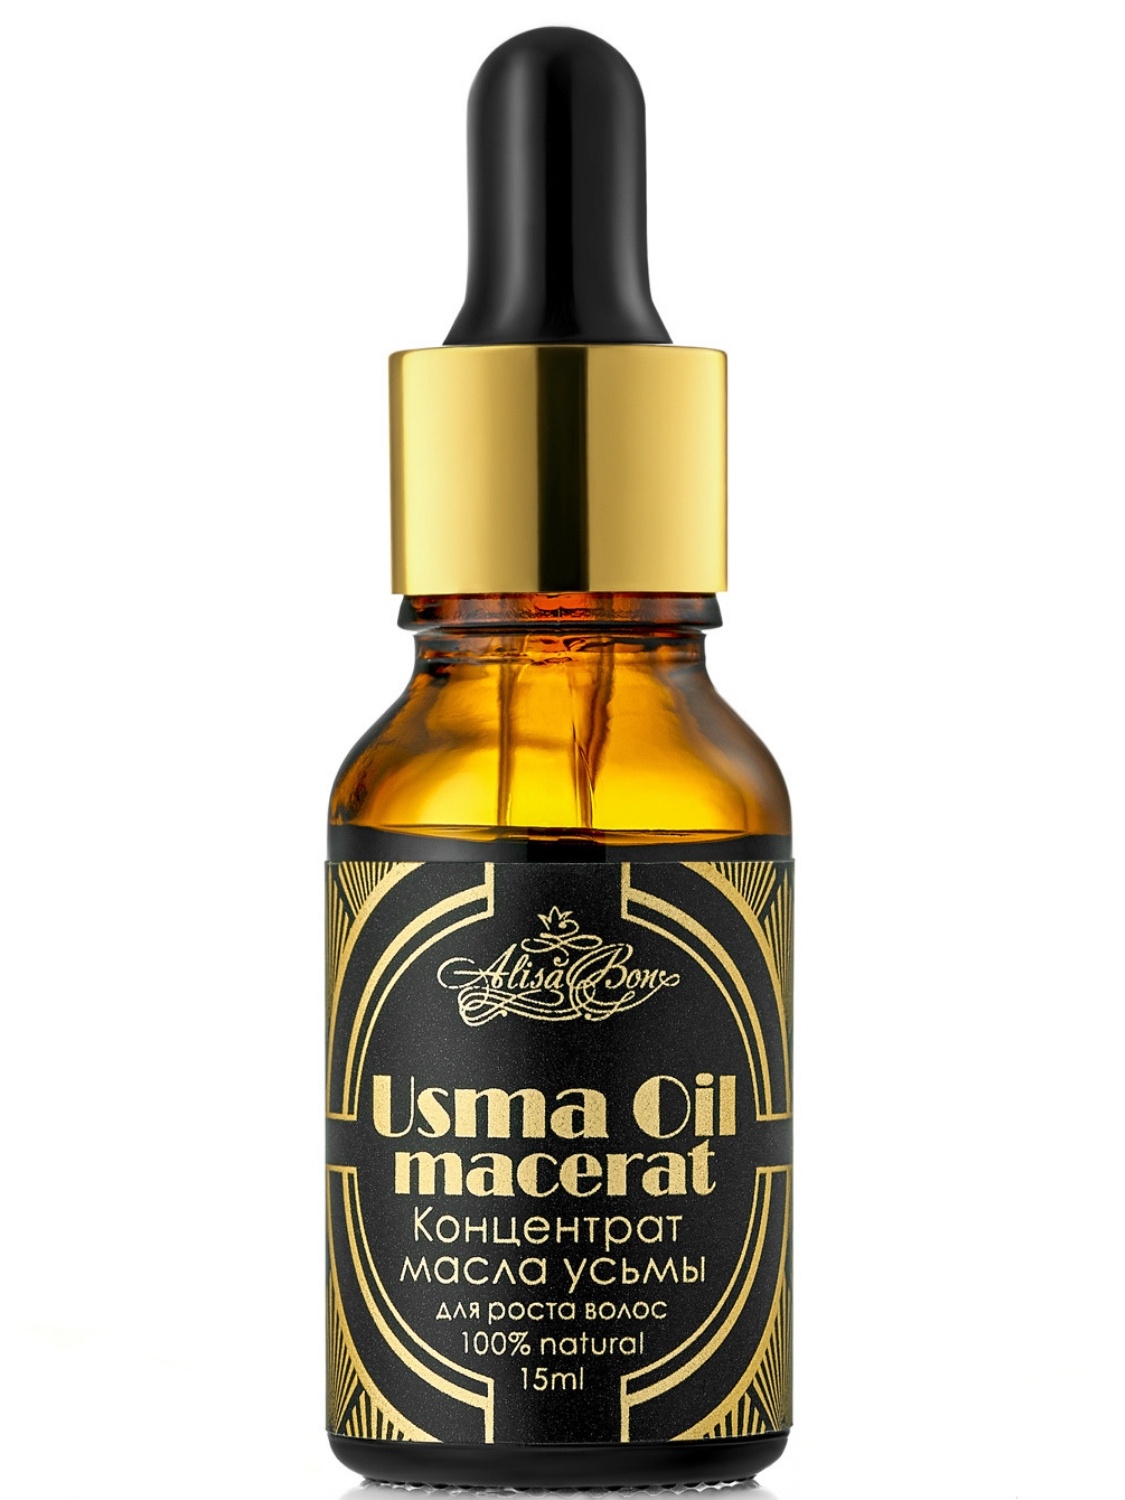 фото Концентрат масла усьмы для роста волос и бровей "Usma Oil macerat" Alisa bon